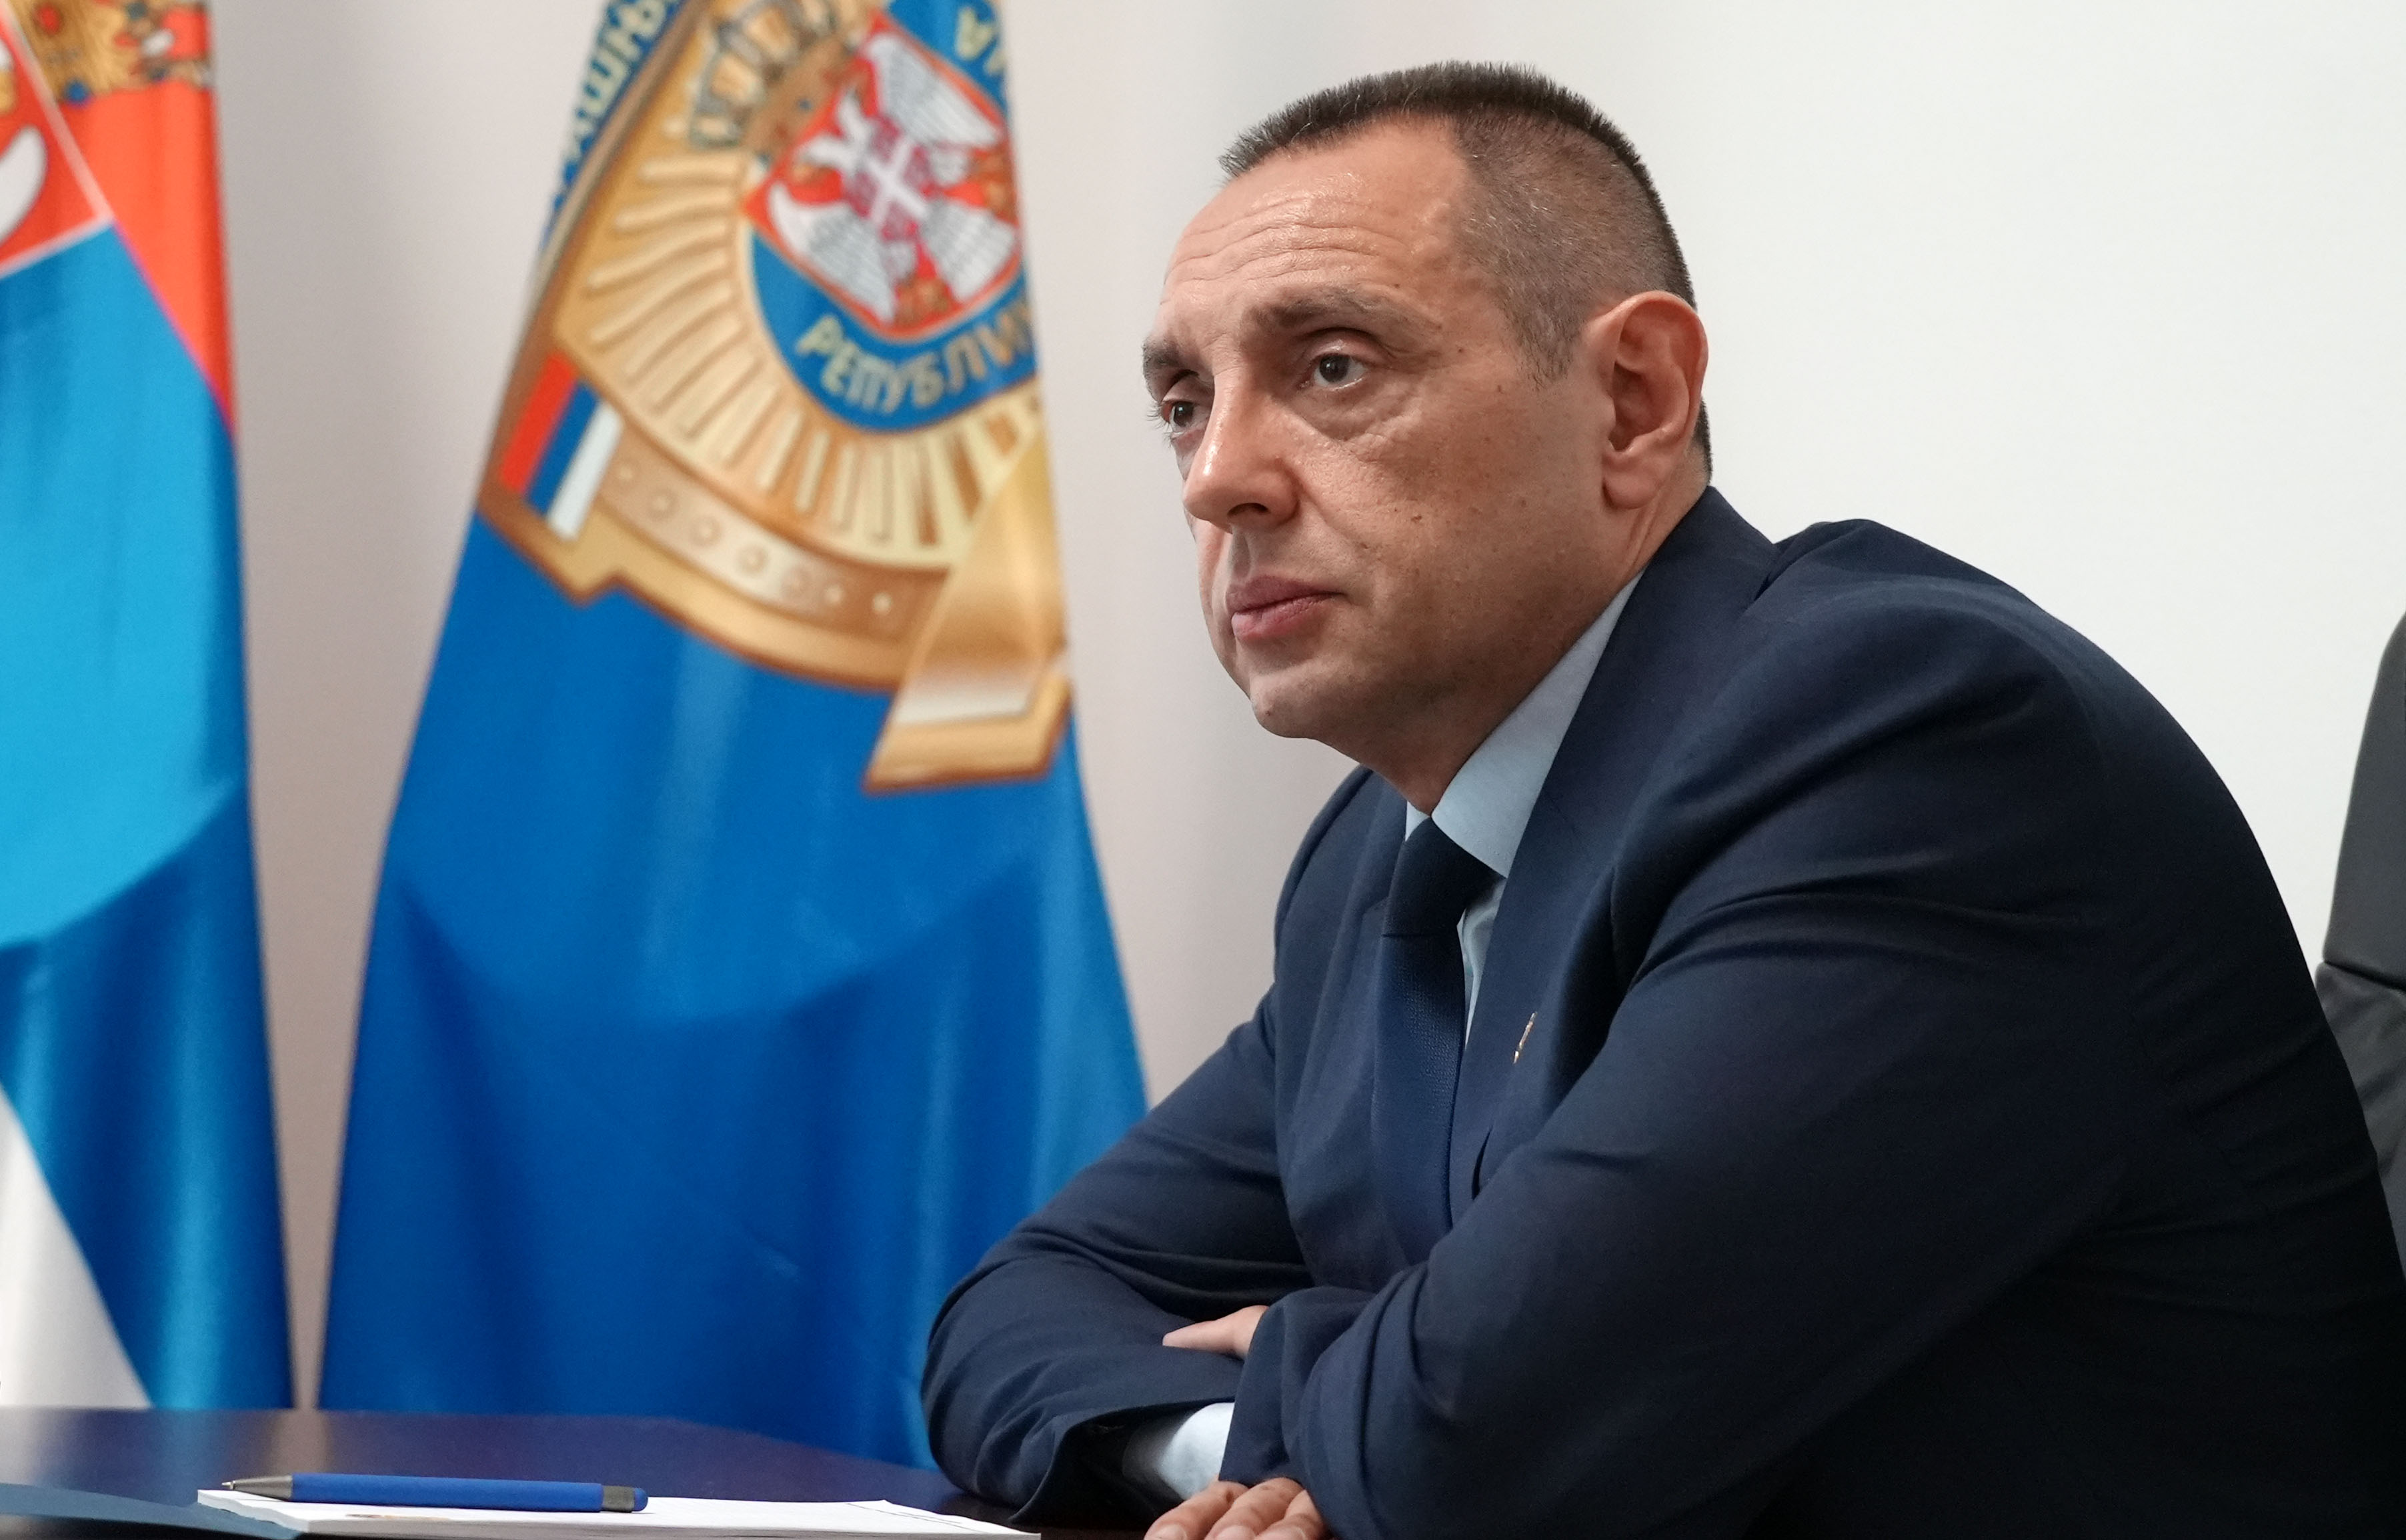 Ministar unutrašnjih poslova Srbije Aleksandar Vulin: Nećemo tolerisati nasilјe na ulicama Beograda, niti će biti nedozvolјene šetnje